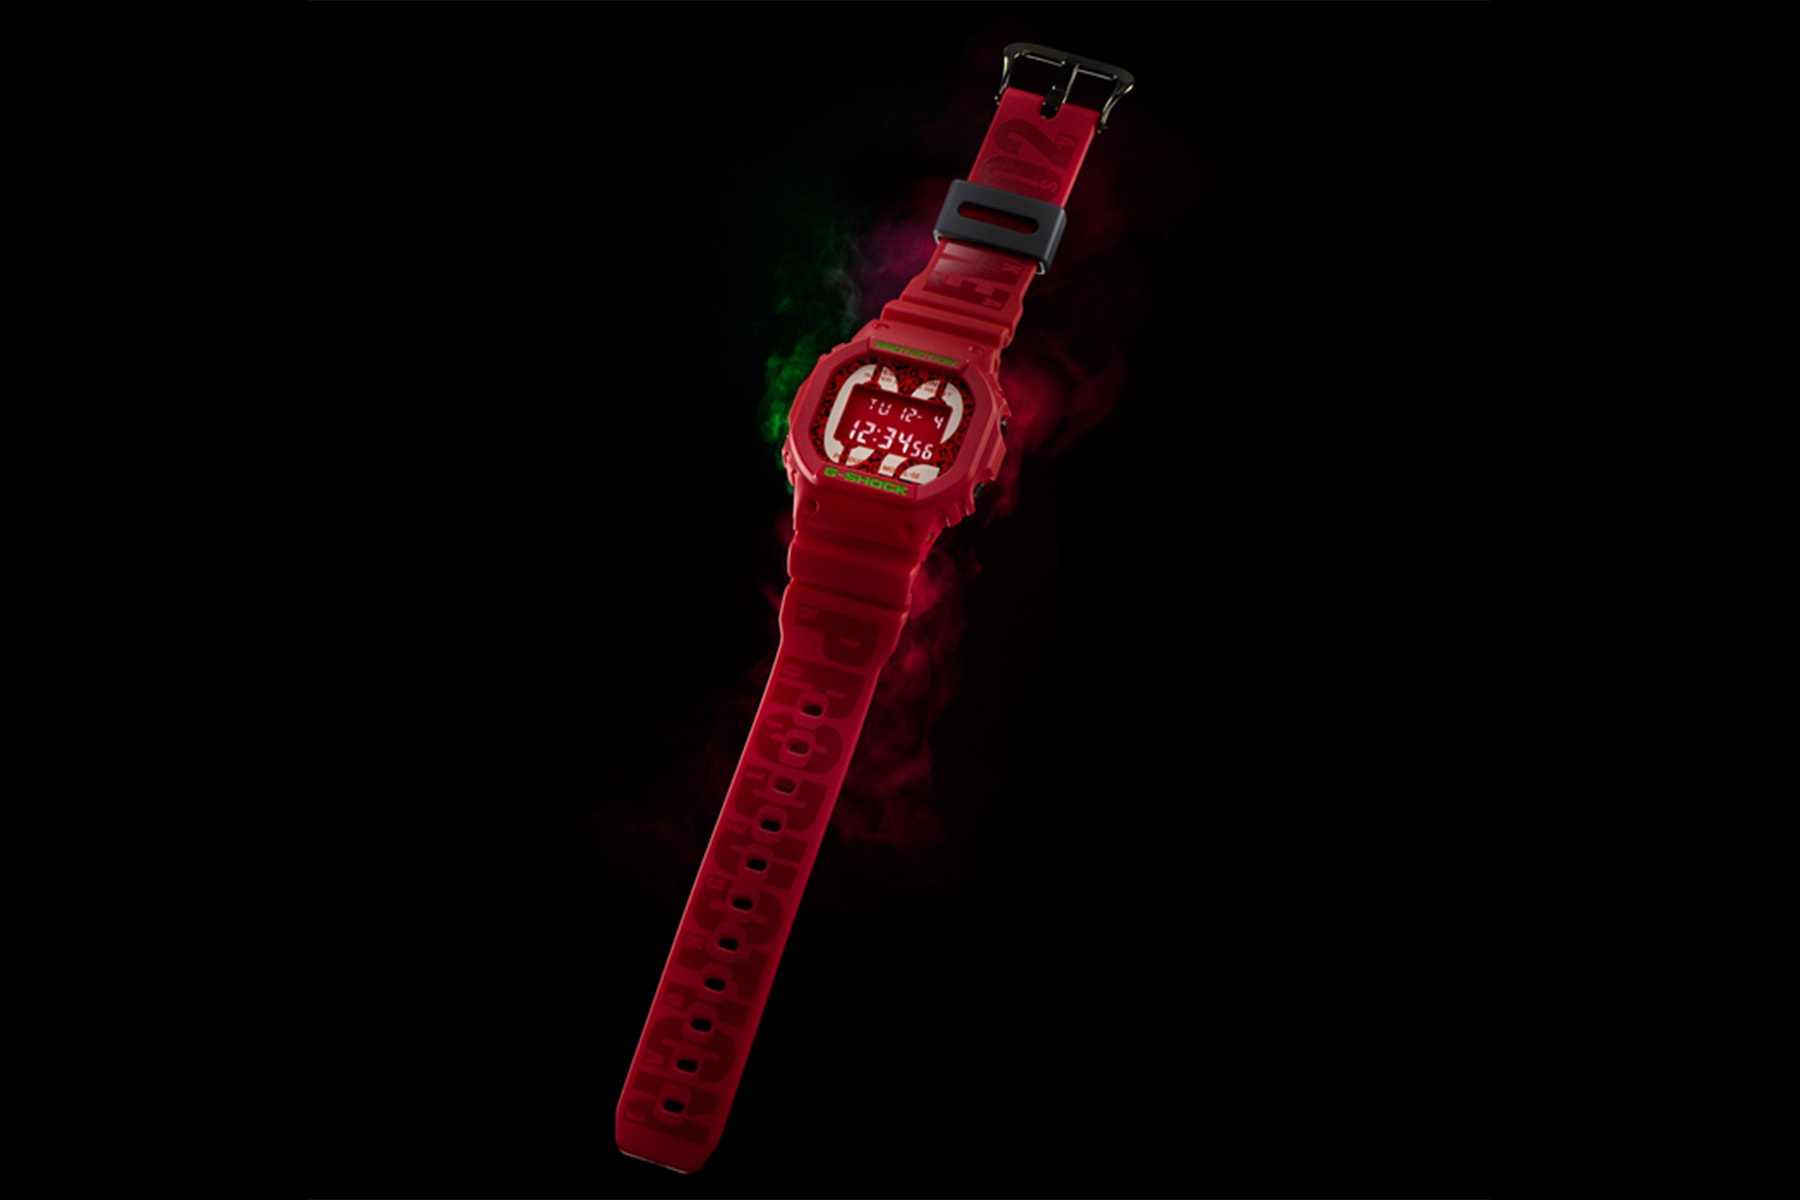 《新世紀福音戰士 Evangelion》x G-Shock 第二彈聯乘 DW-5600 錶款登場